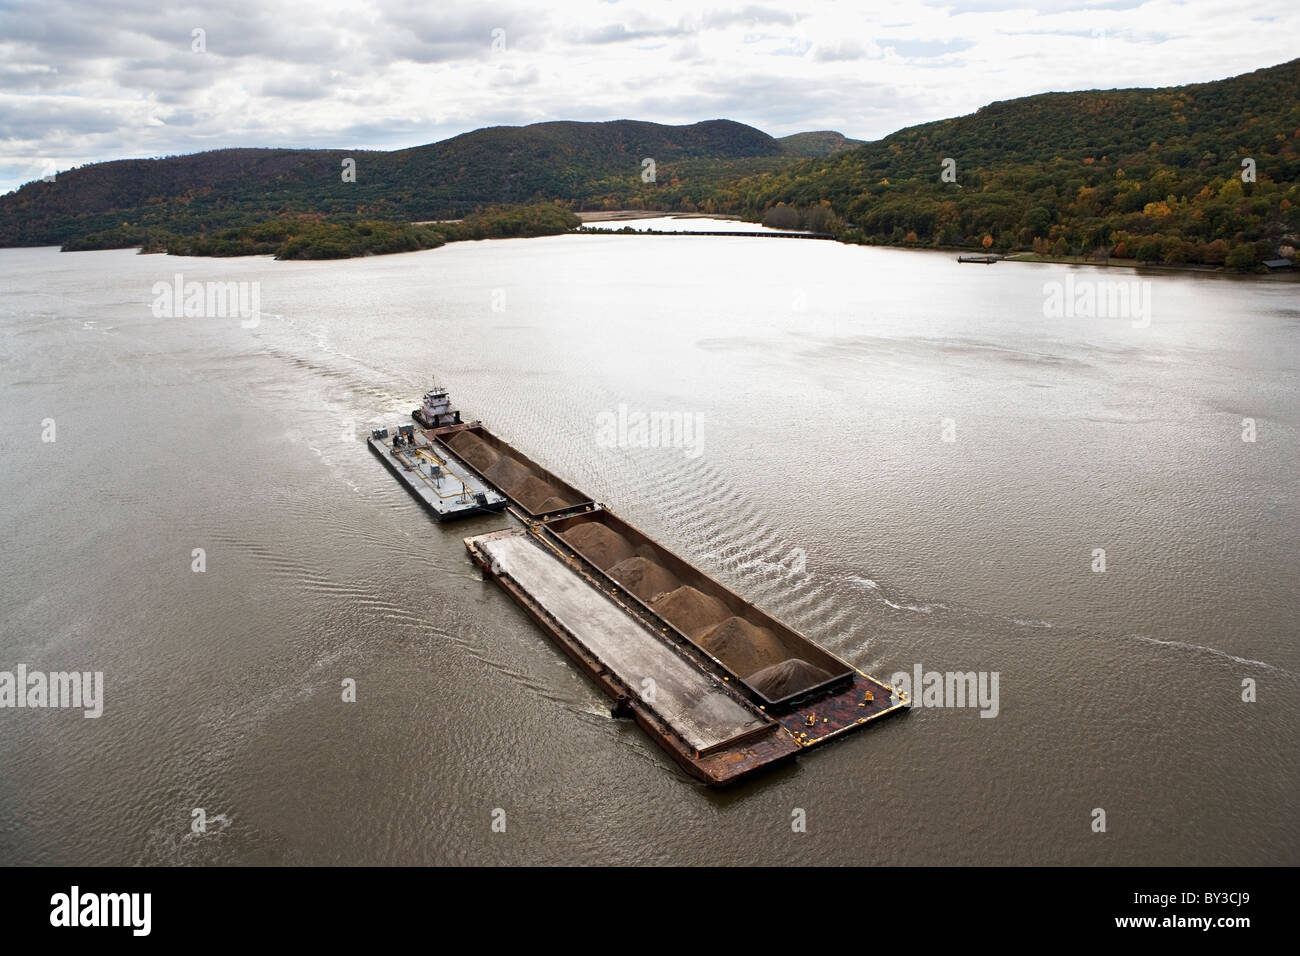 Los Estados Unidos, Nueva York, Bear Mountain, vista aérea de la barcaza sobre el río Foto de stock